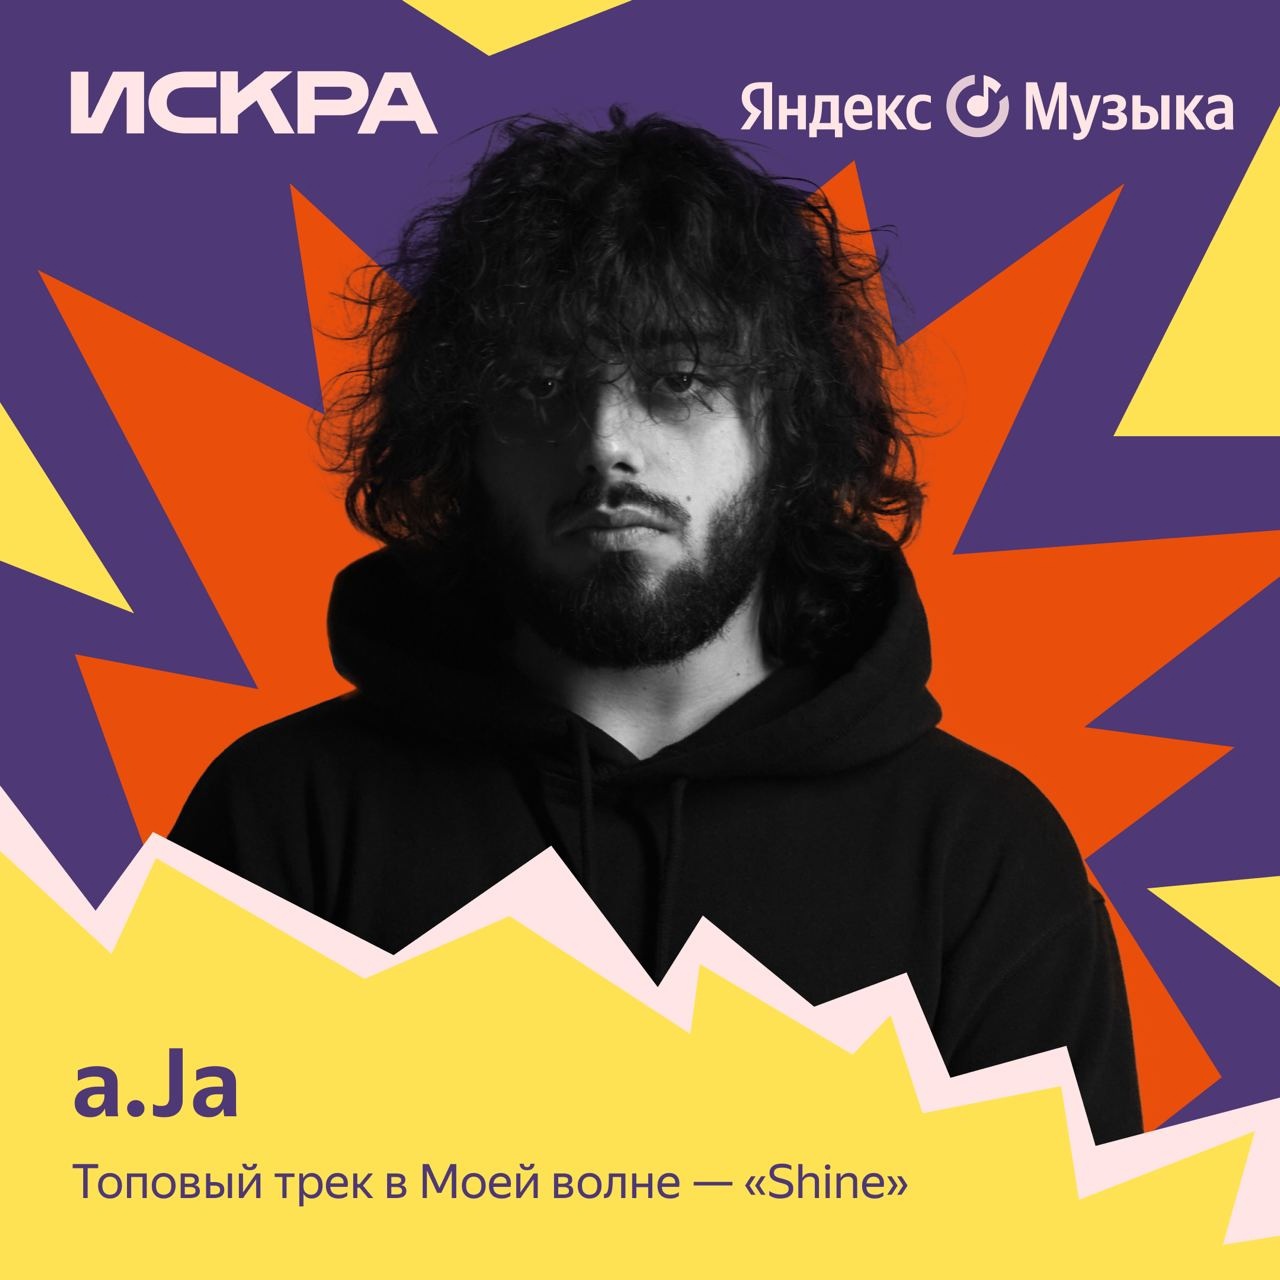 a.ja — новый герой плейлиста «Искра» на Яндекс Музыке. жанров.